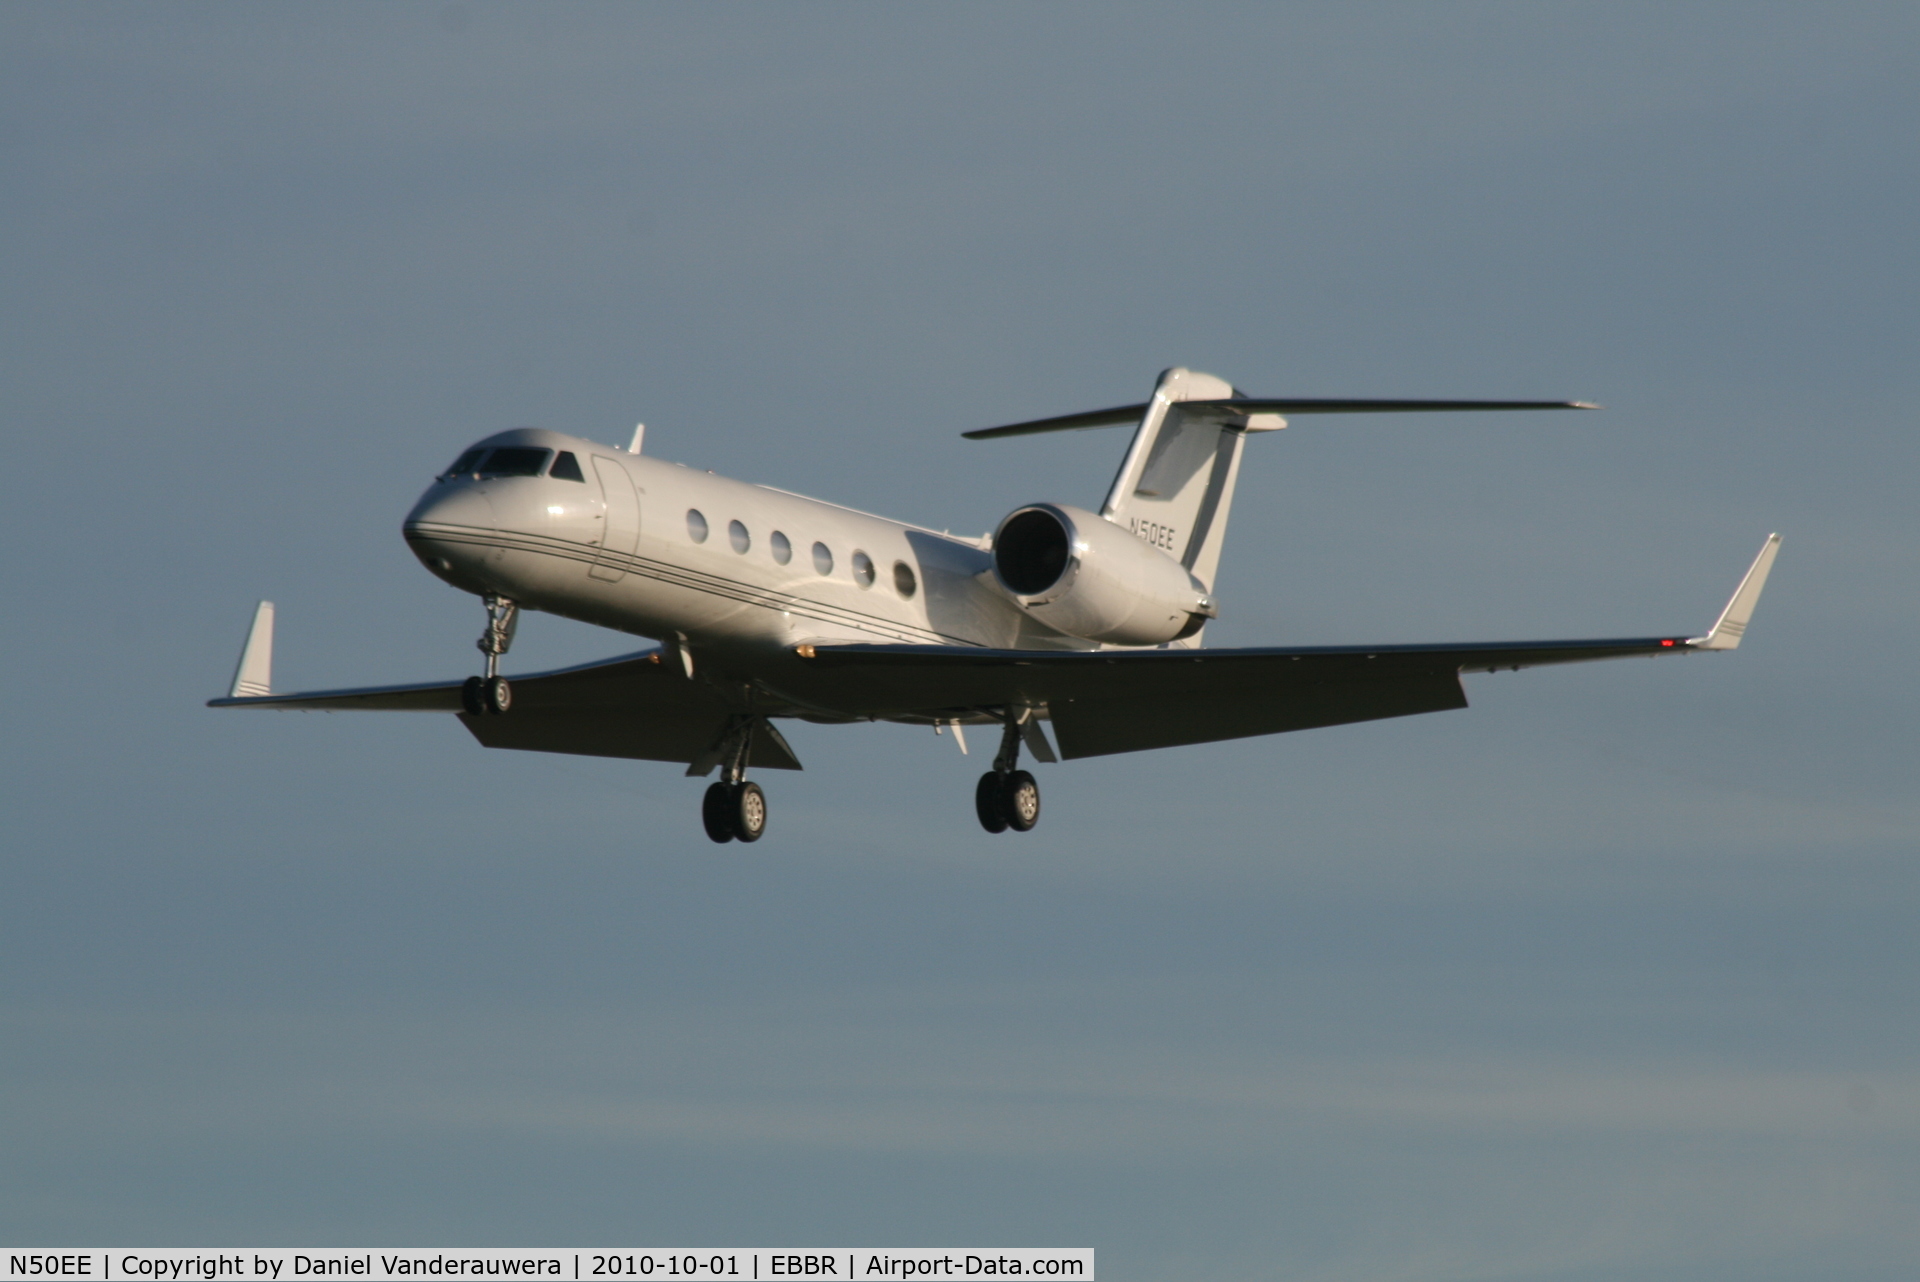 N50EE, 2002 Gulfstream Aerospace G-IV C/N 1500, Arrival to RWY 25L